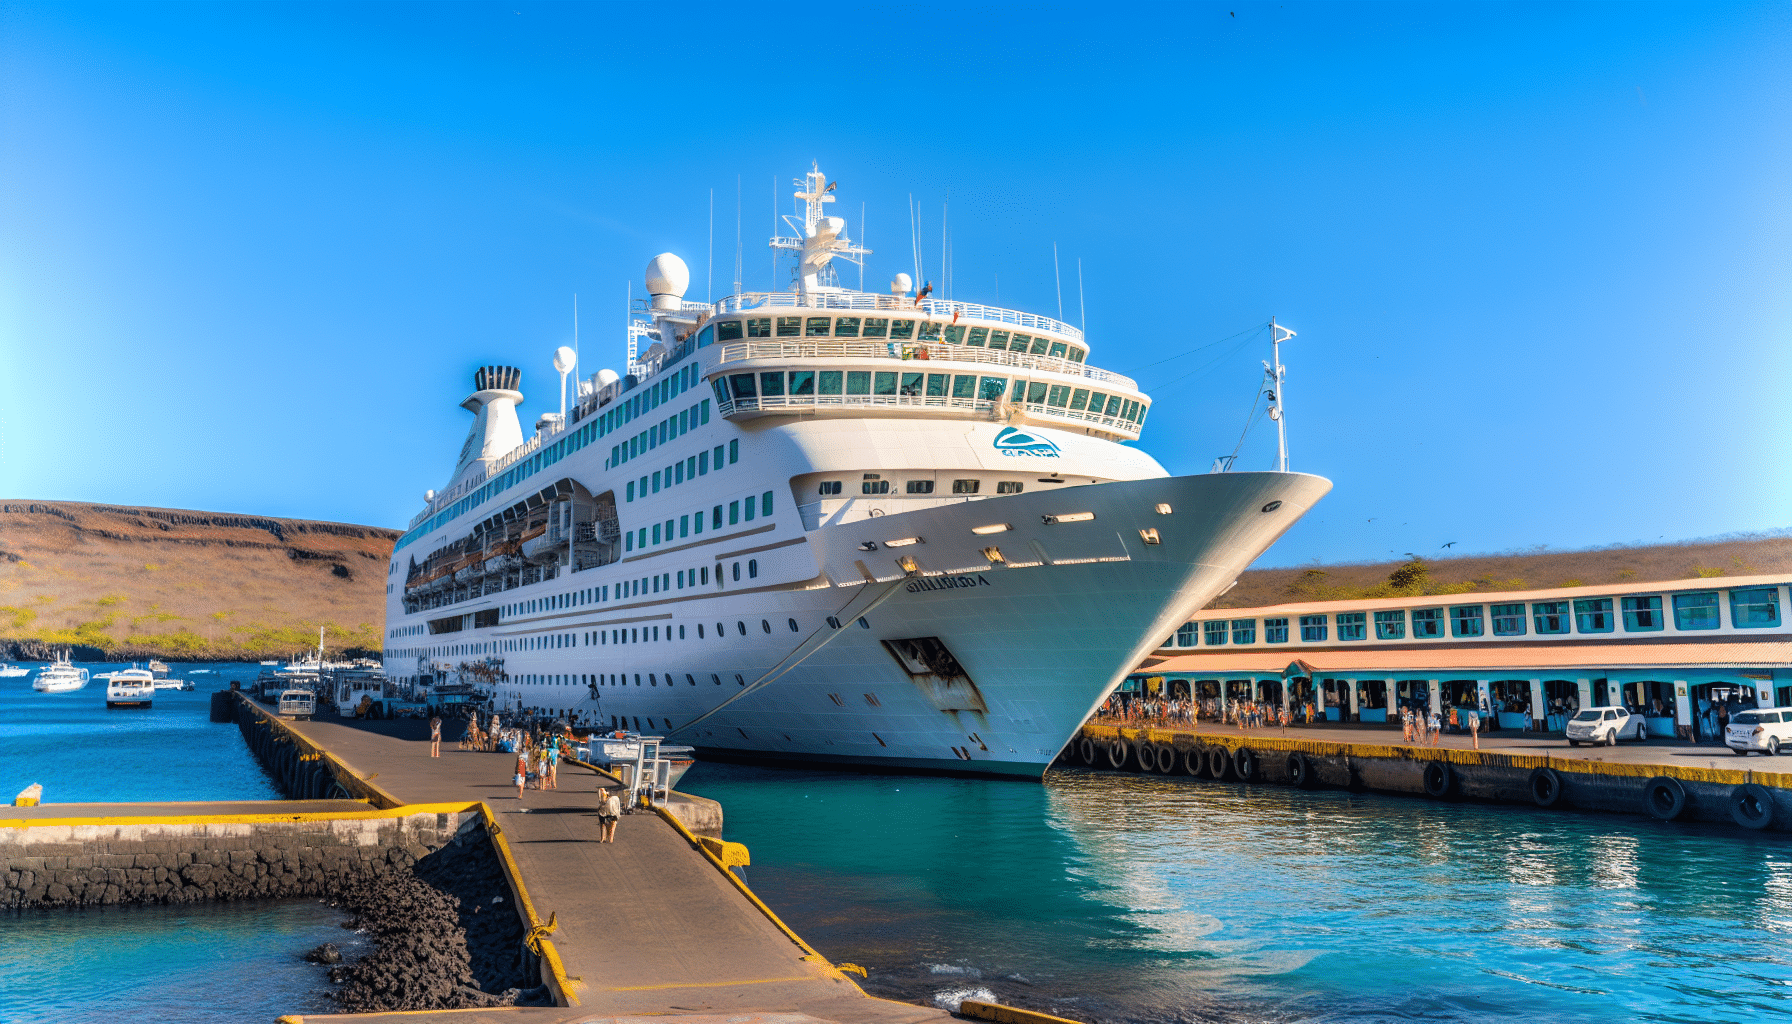 Budget-friendly Galapagos cruise ship